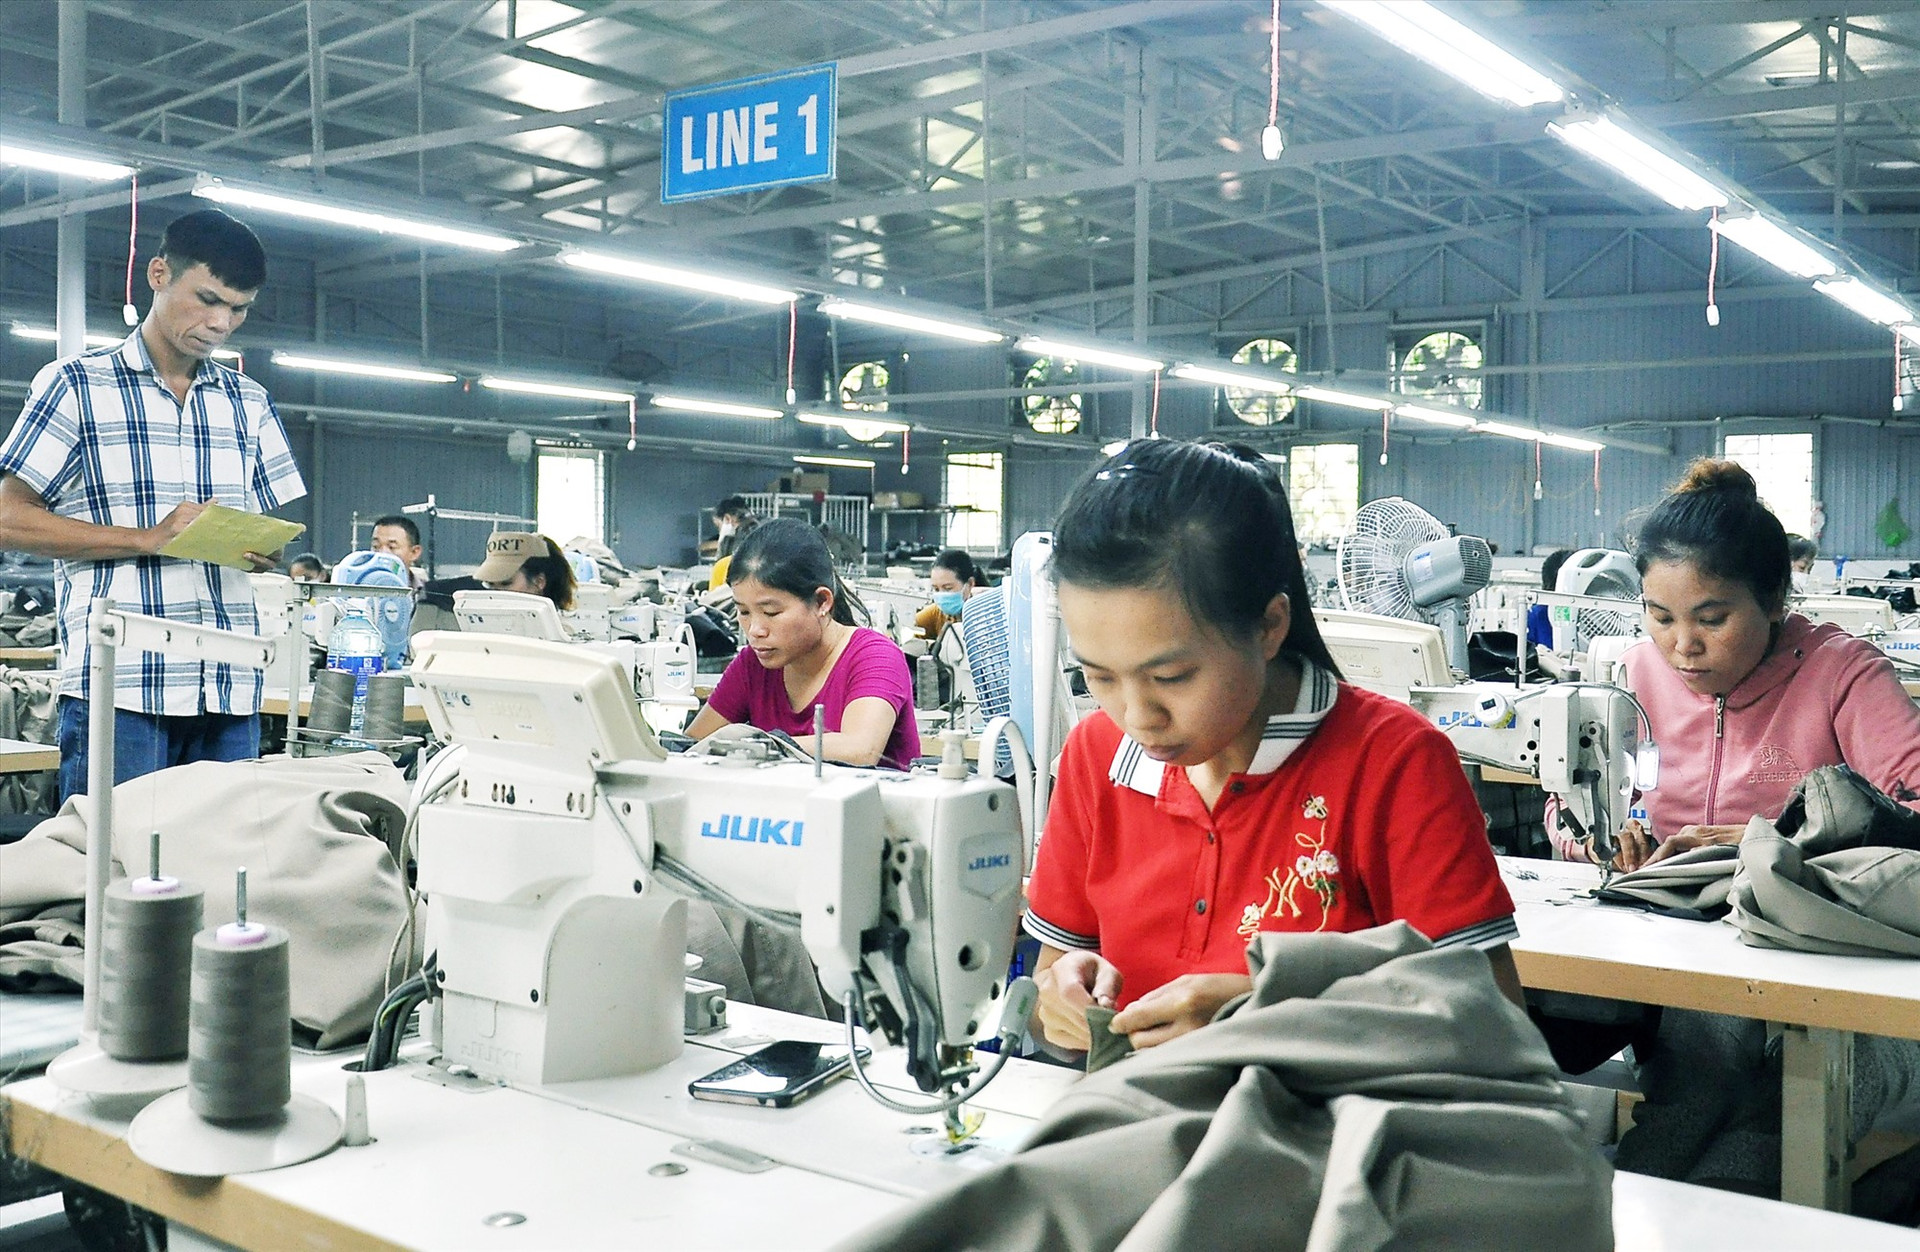 Chính quyền xã Sơn Viên tích cực thu hút doanh nghiệp đầu tư vào địa bàn để giải quyết việc làm, nâng cao thu nhập cho lao động nông thôn. Ảnh: Đ.N